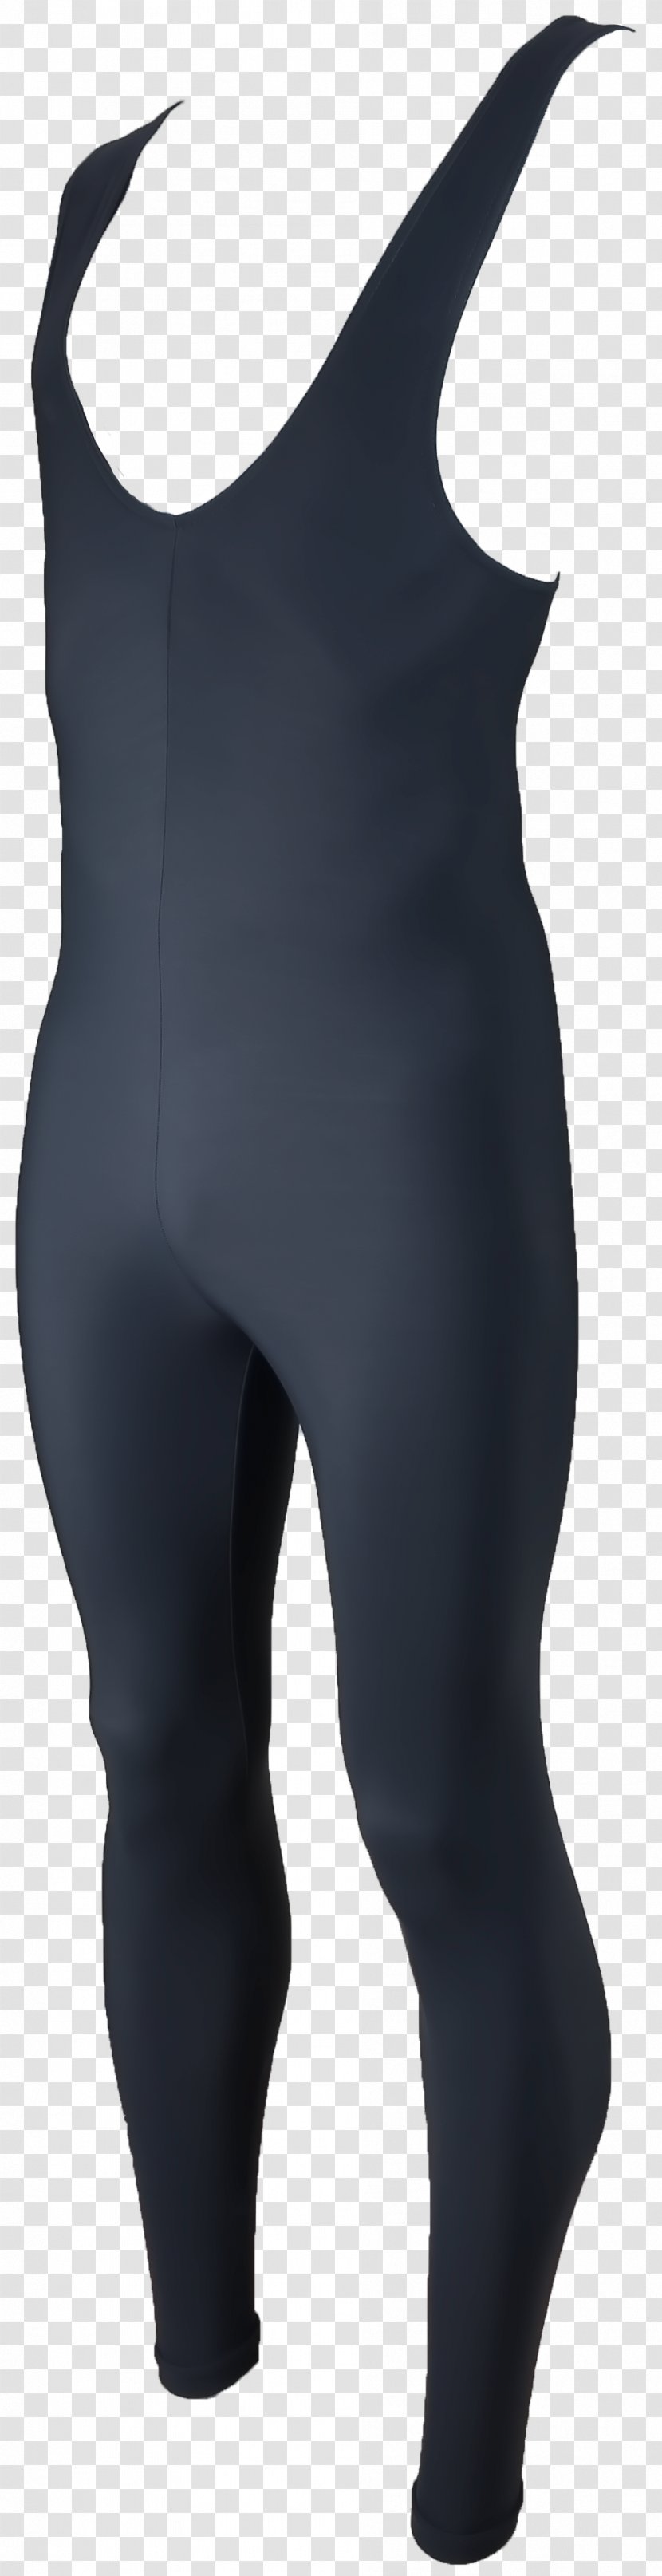 Shoulder Tights - Neck - Wetsuit Transparent PNG